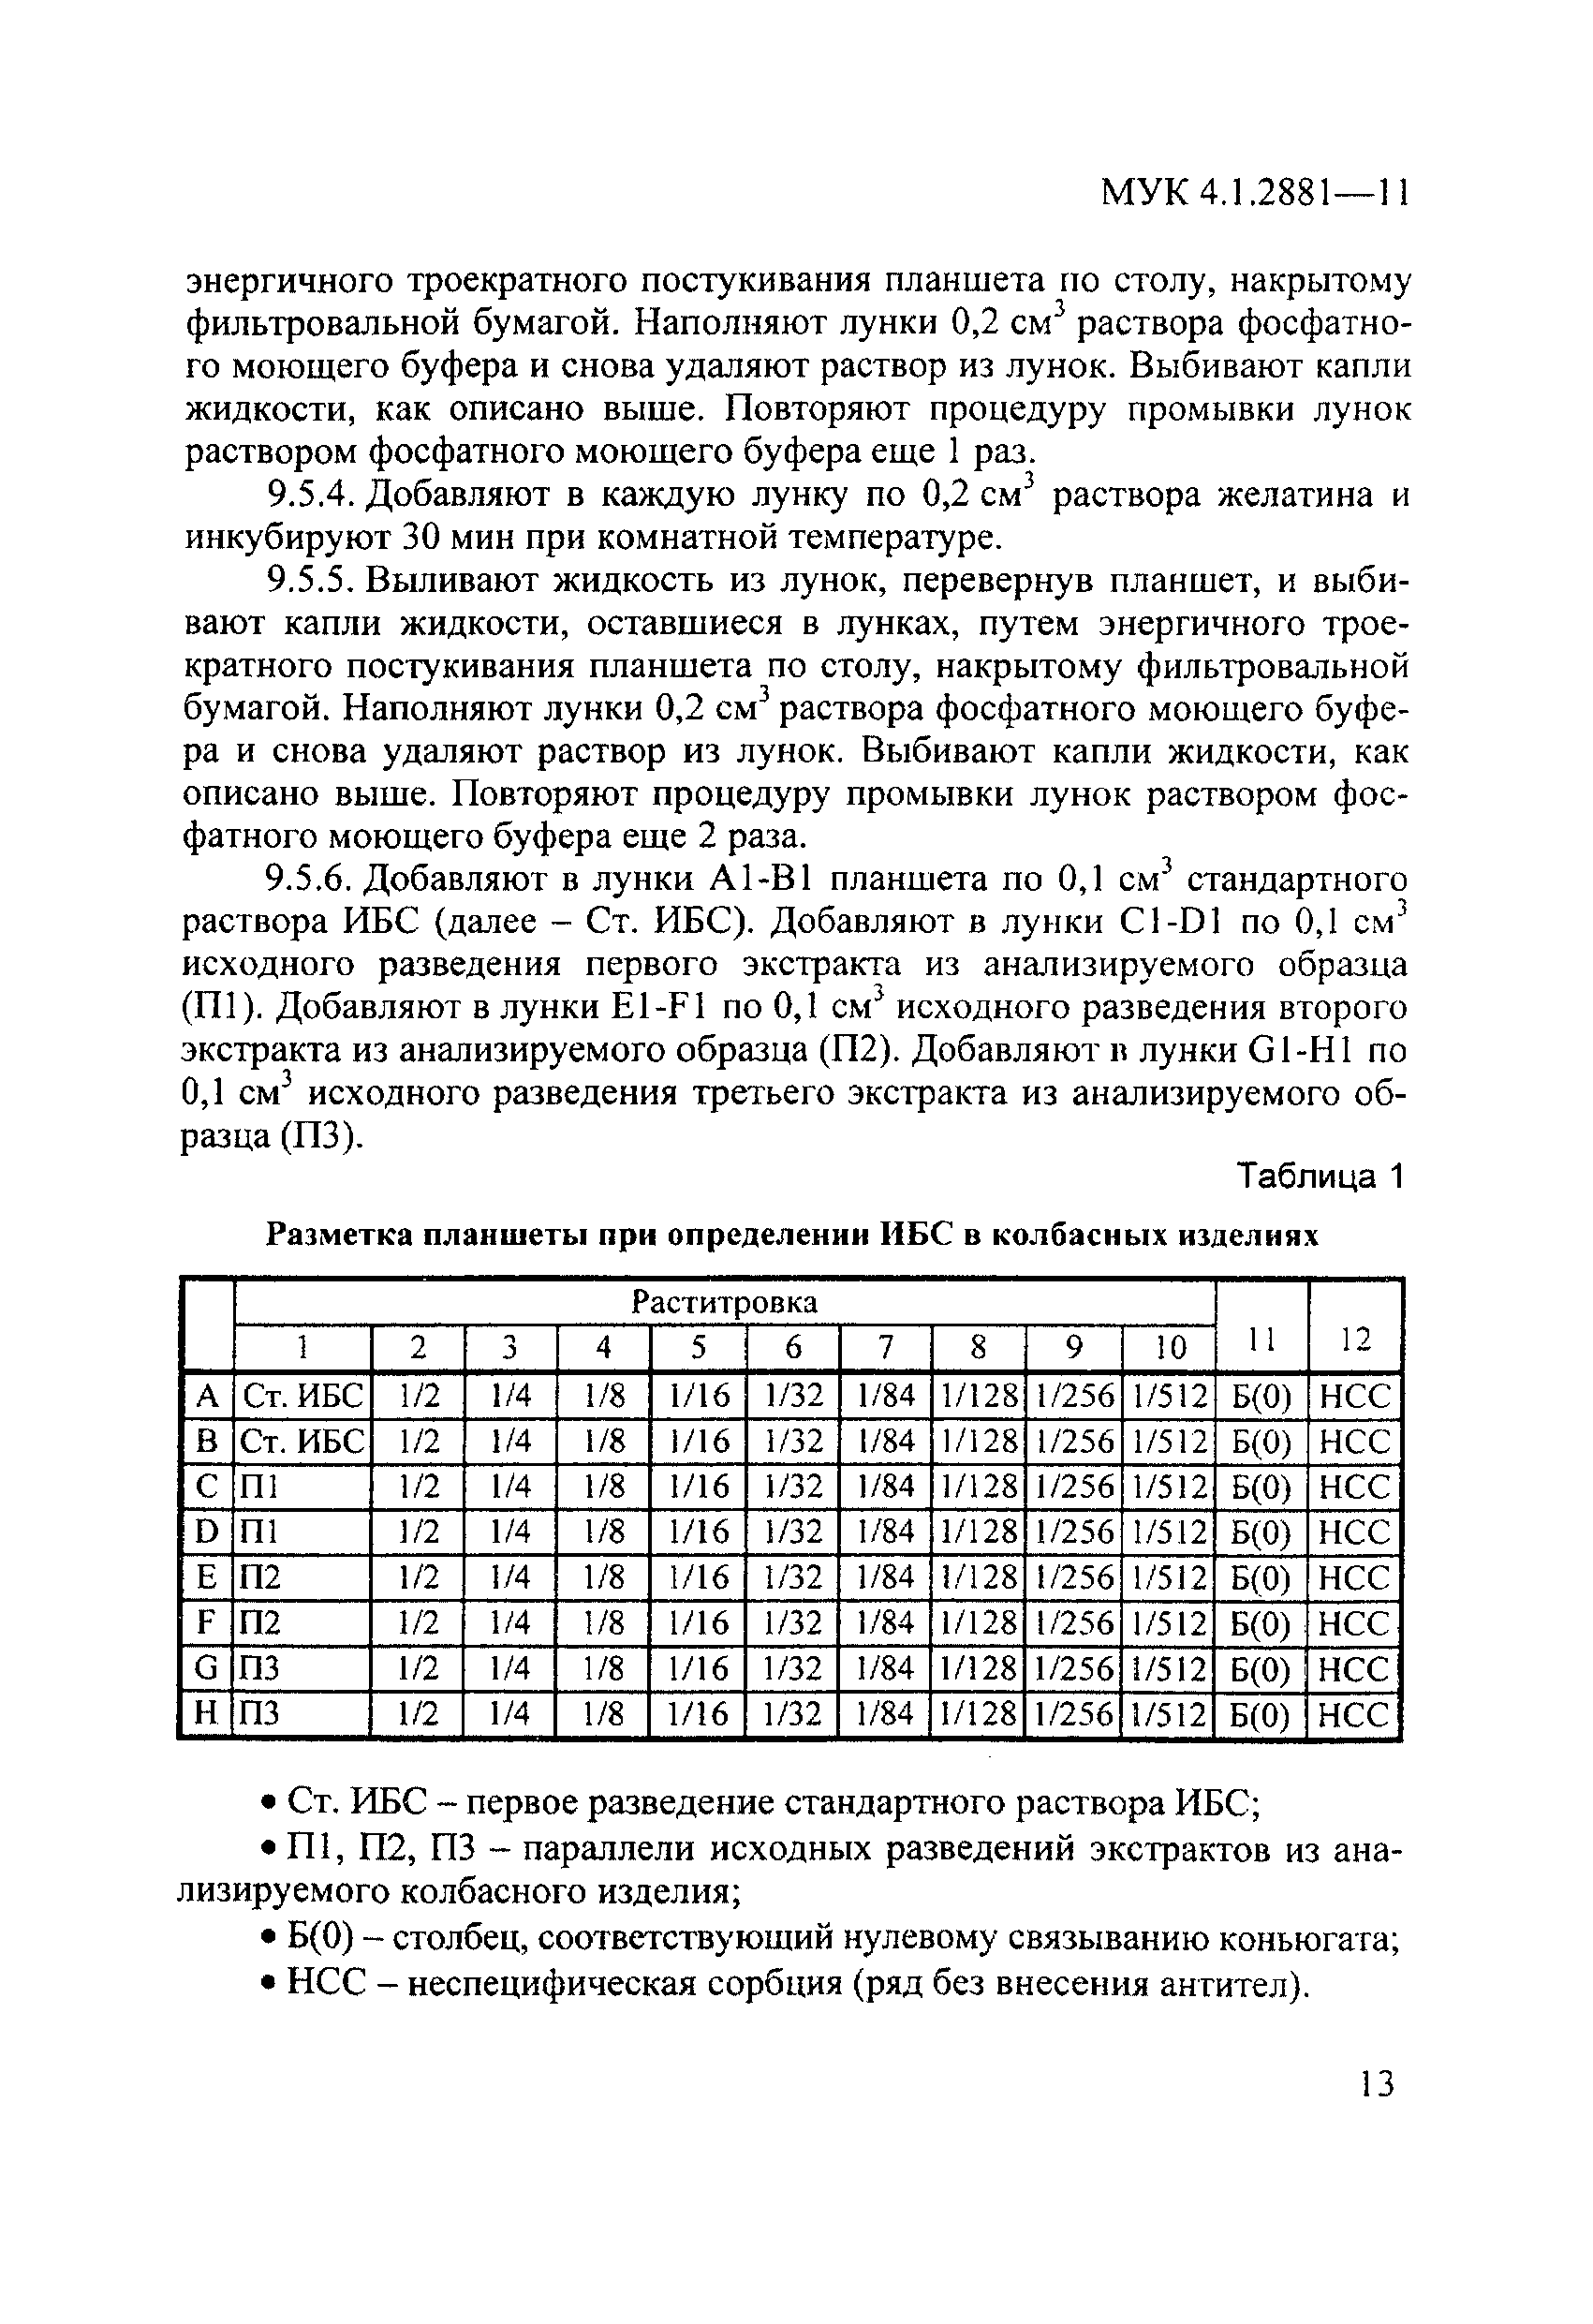 МУК 4.1.2881-11